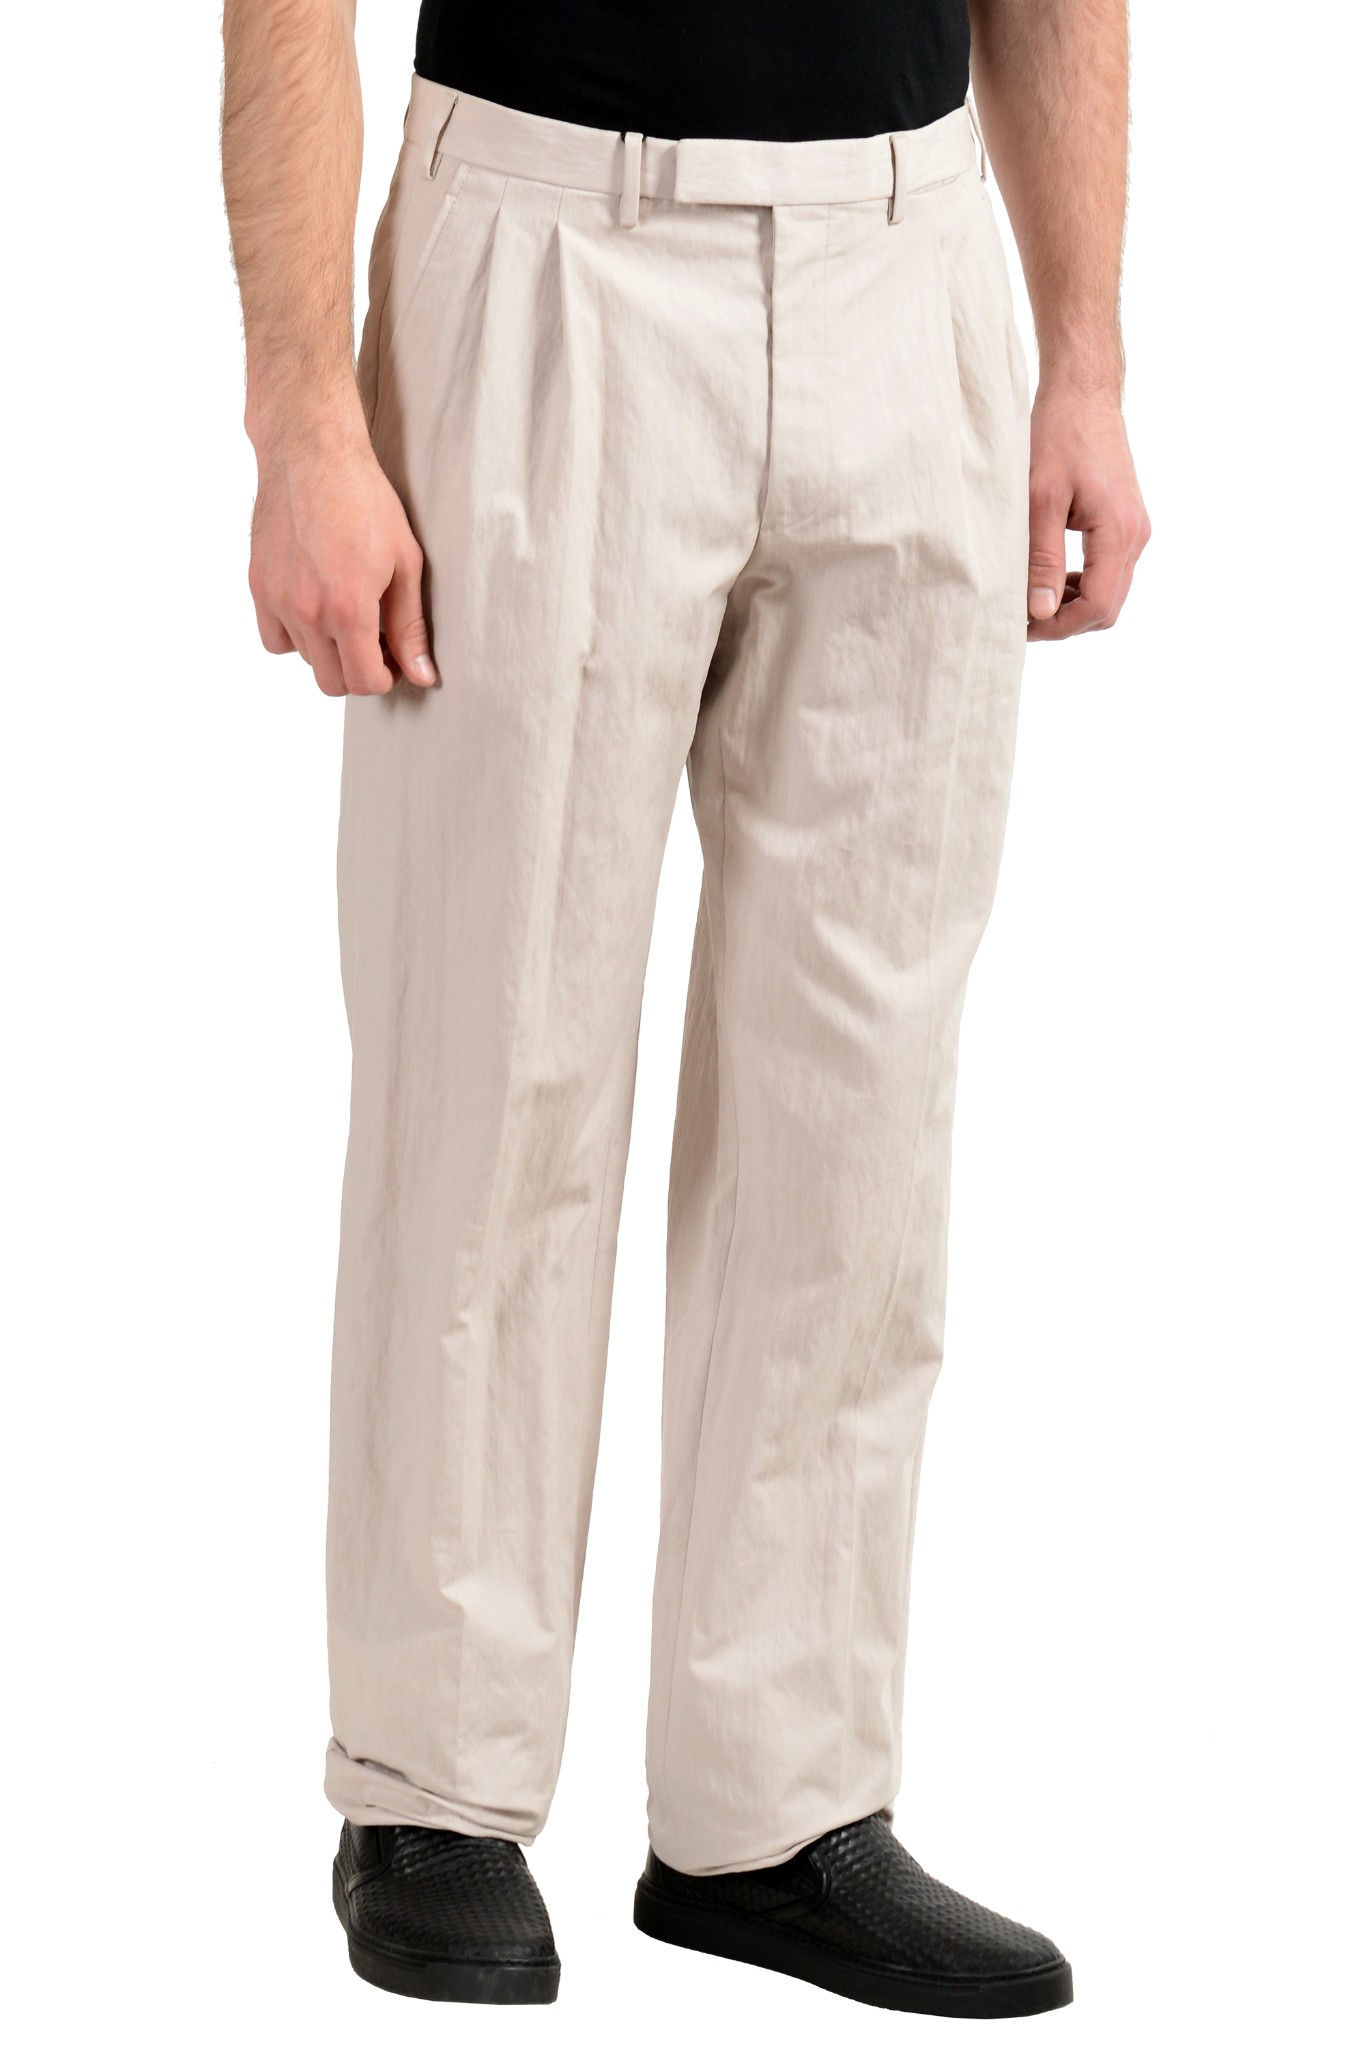 Gianfranco Ferre Men's Ivory Pleated Casual Pants US 34 IT 50 | eBay